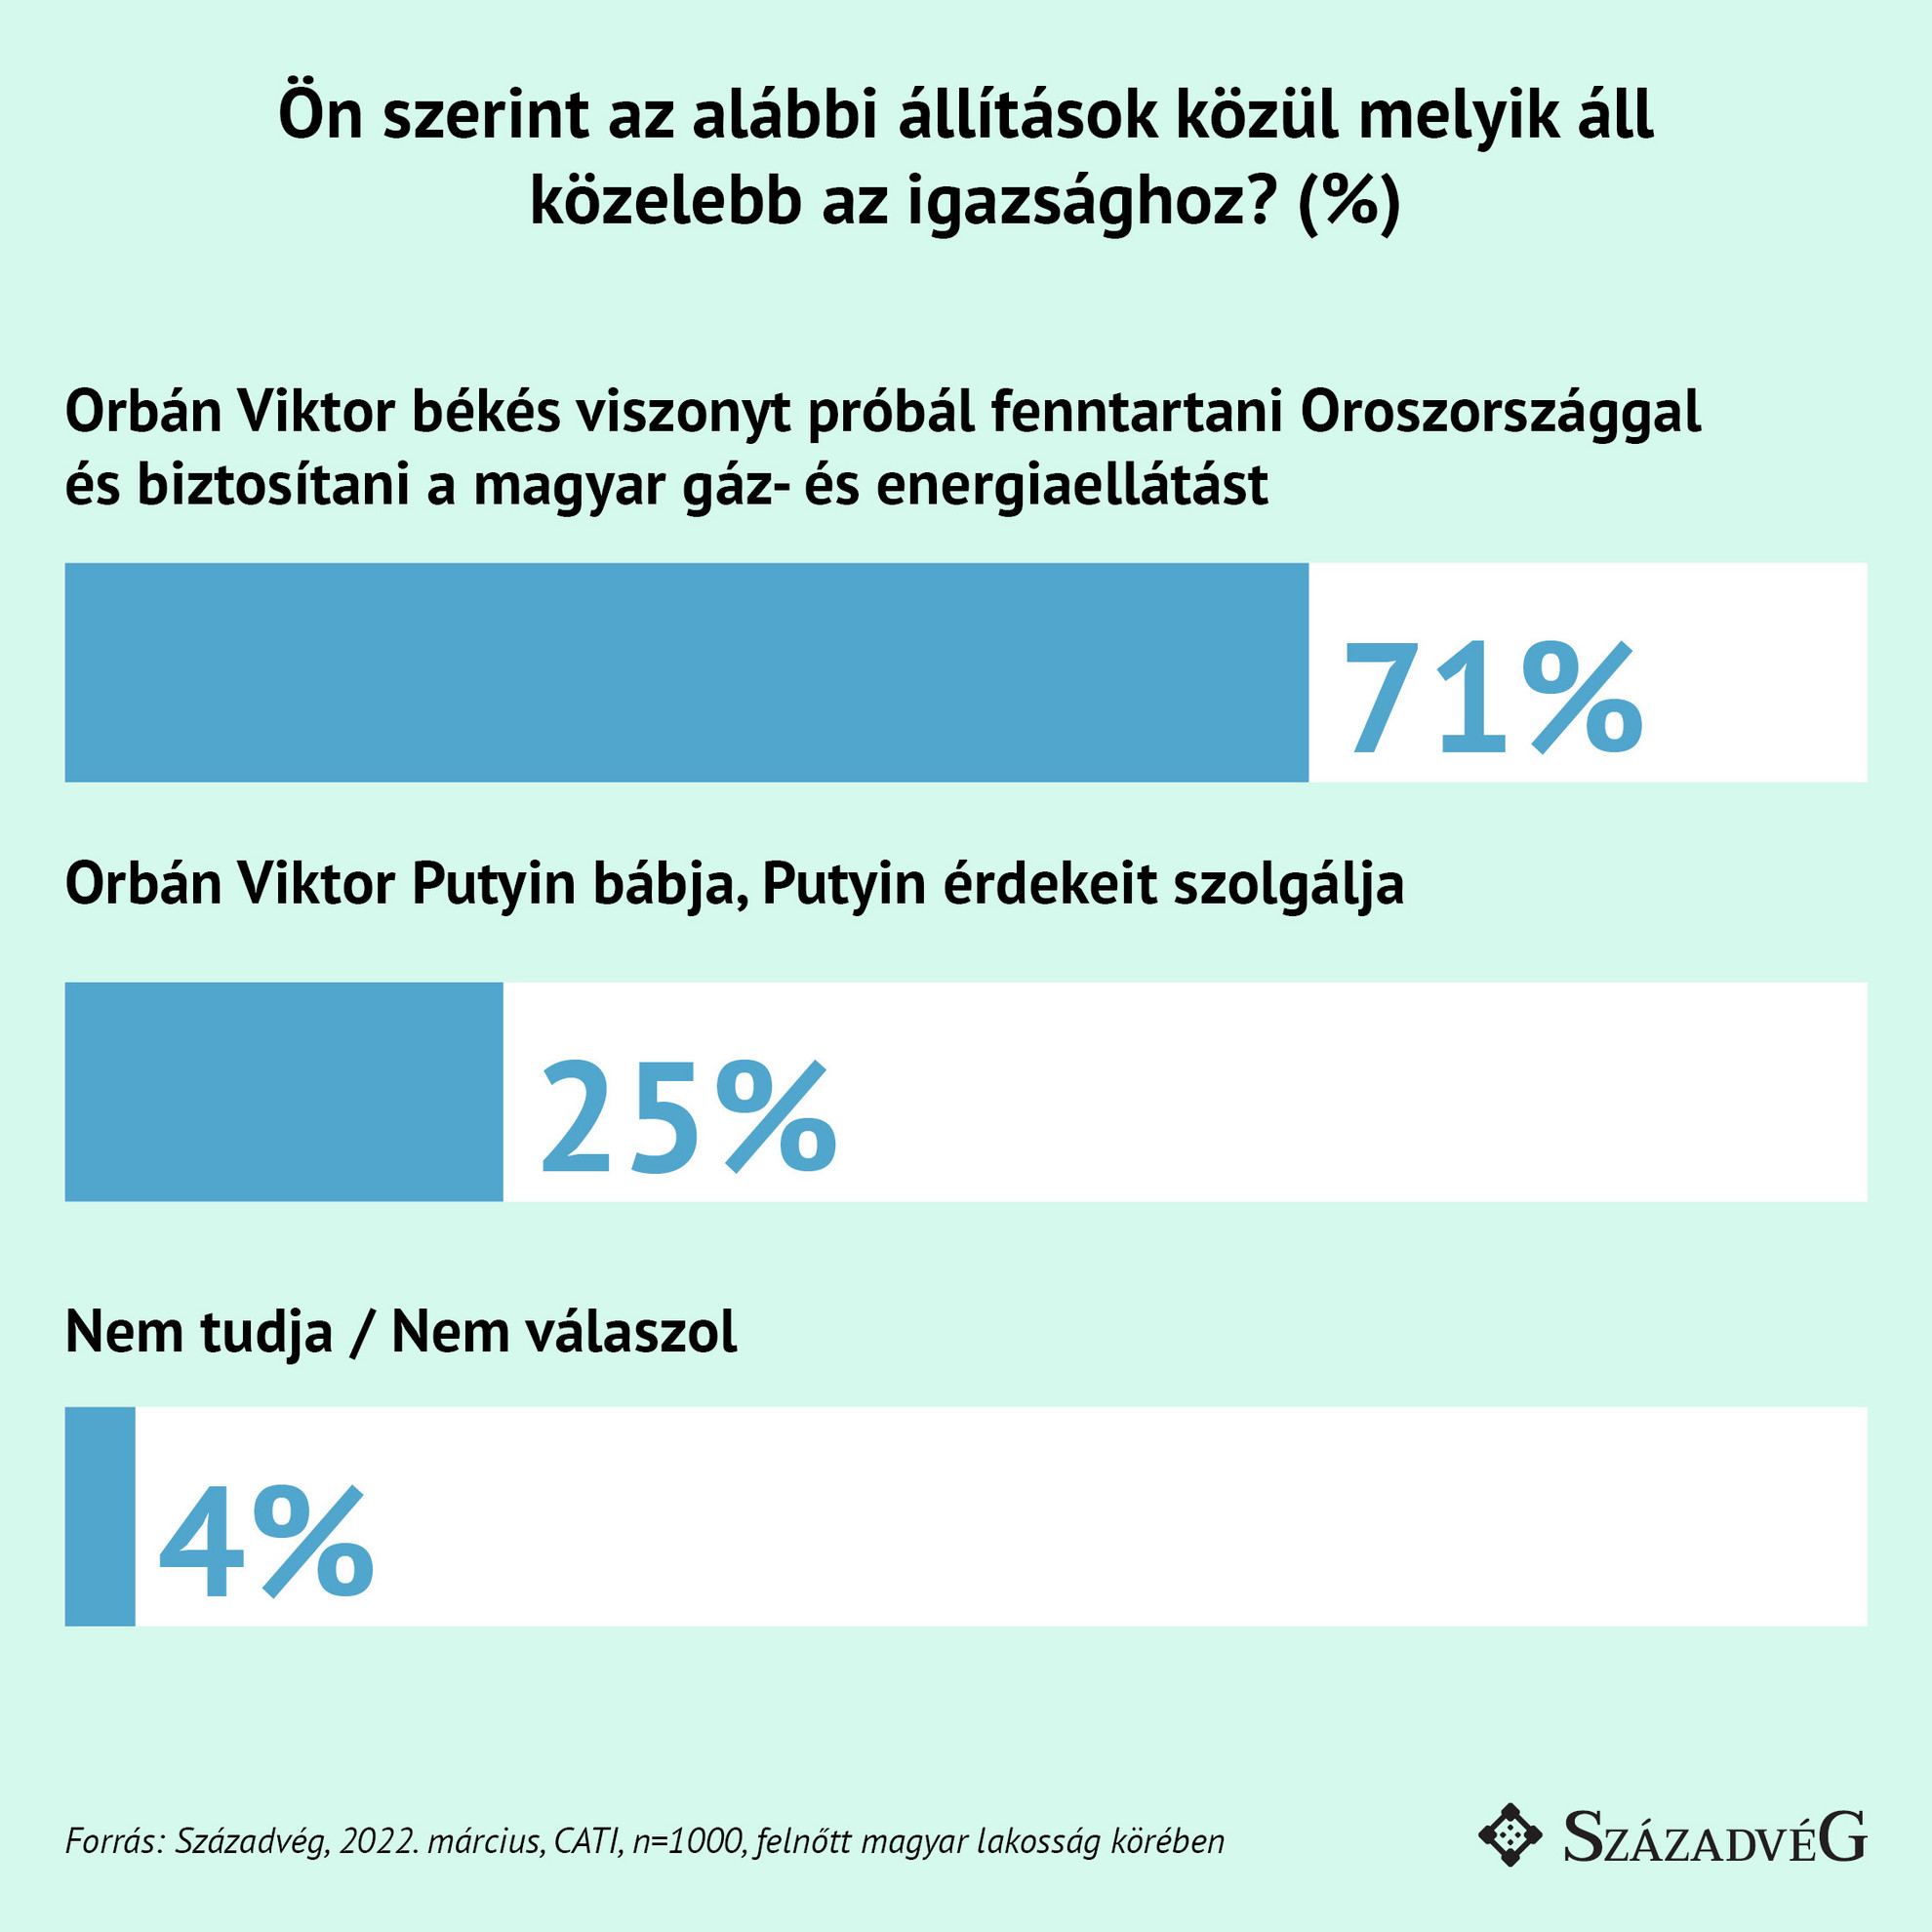 Az elsöprő többség (71 százalék) úgy véli, hogy Orbán Viktor Oroszországgal is békés viszonyt kíván fenntartani, garantálva ezzel a magyar gáz- és energiaellátást